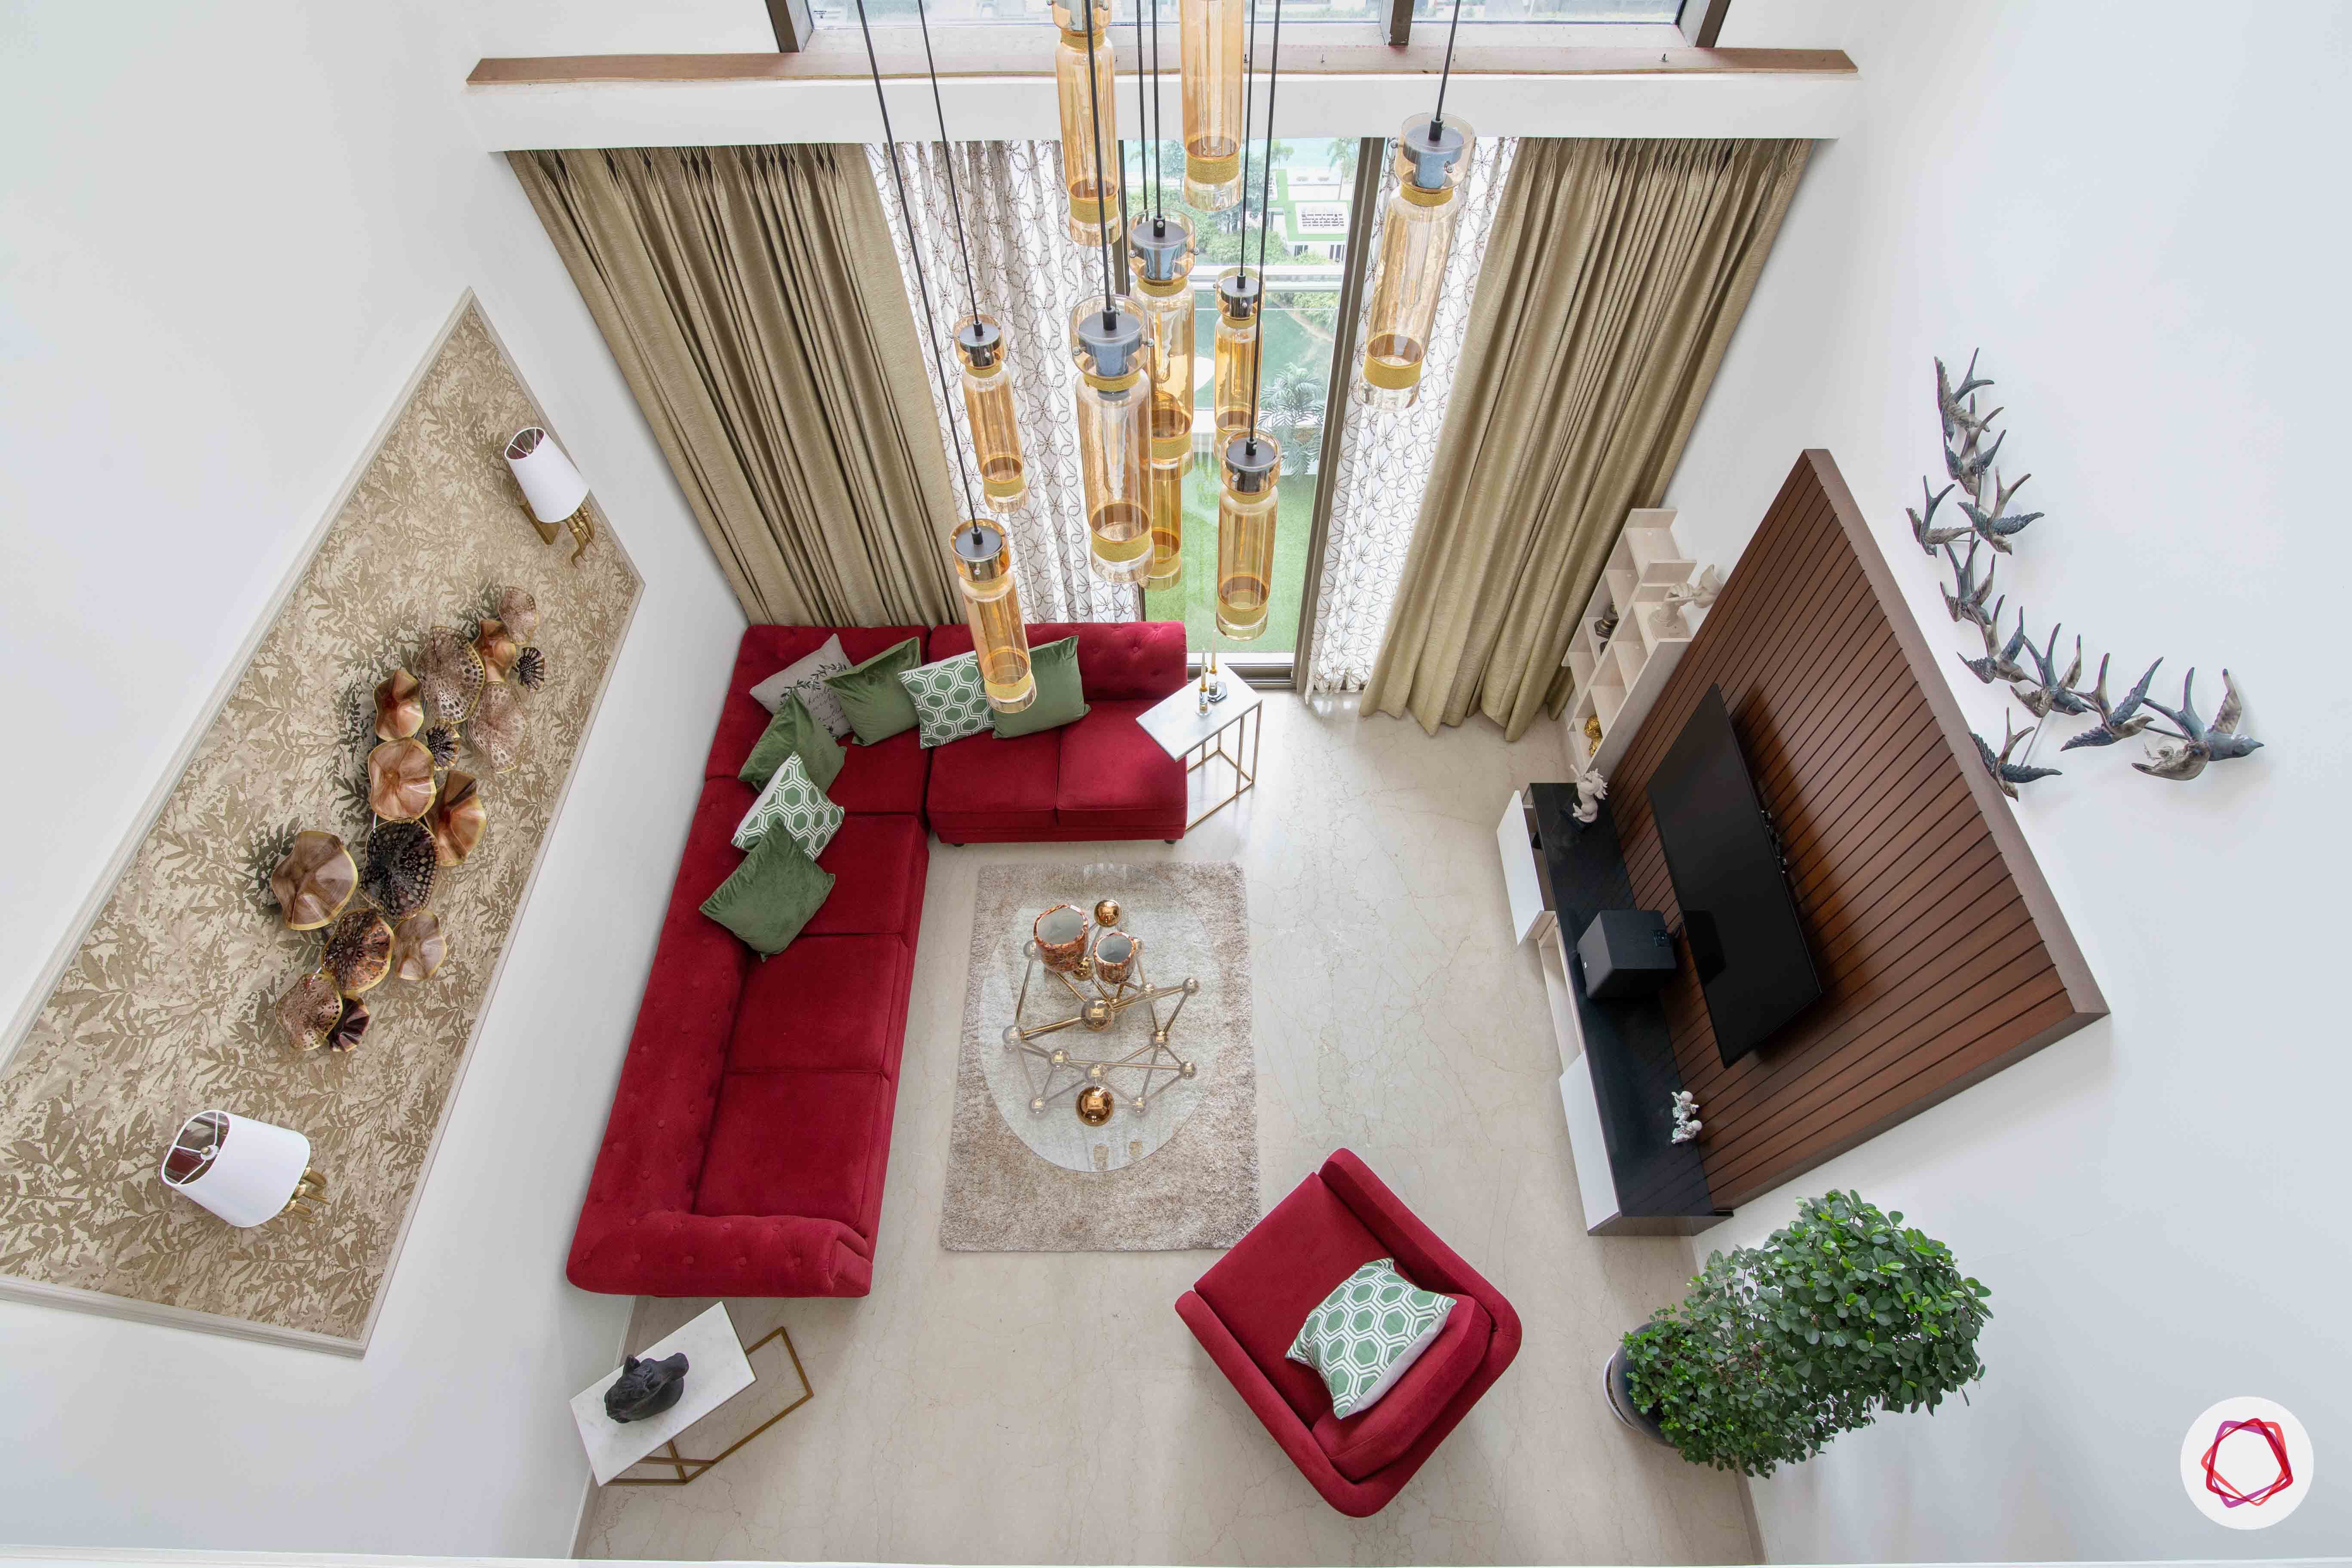 duplex house images-duplex house designs-red sofa designs-modern chandelier designs